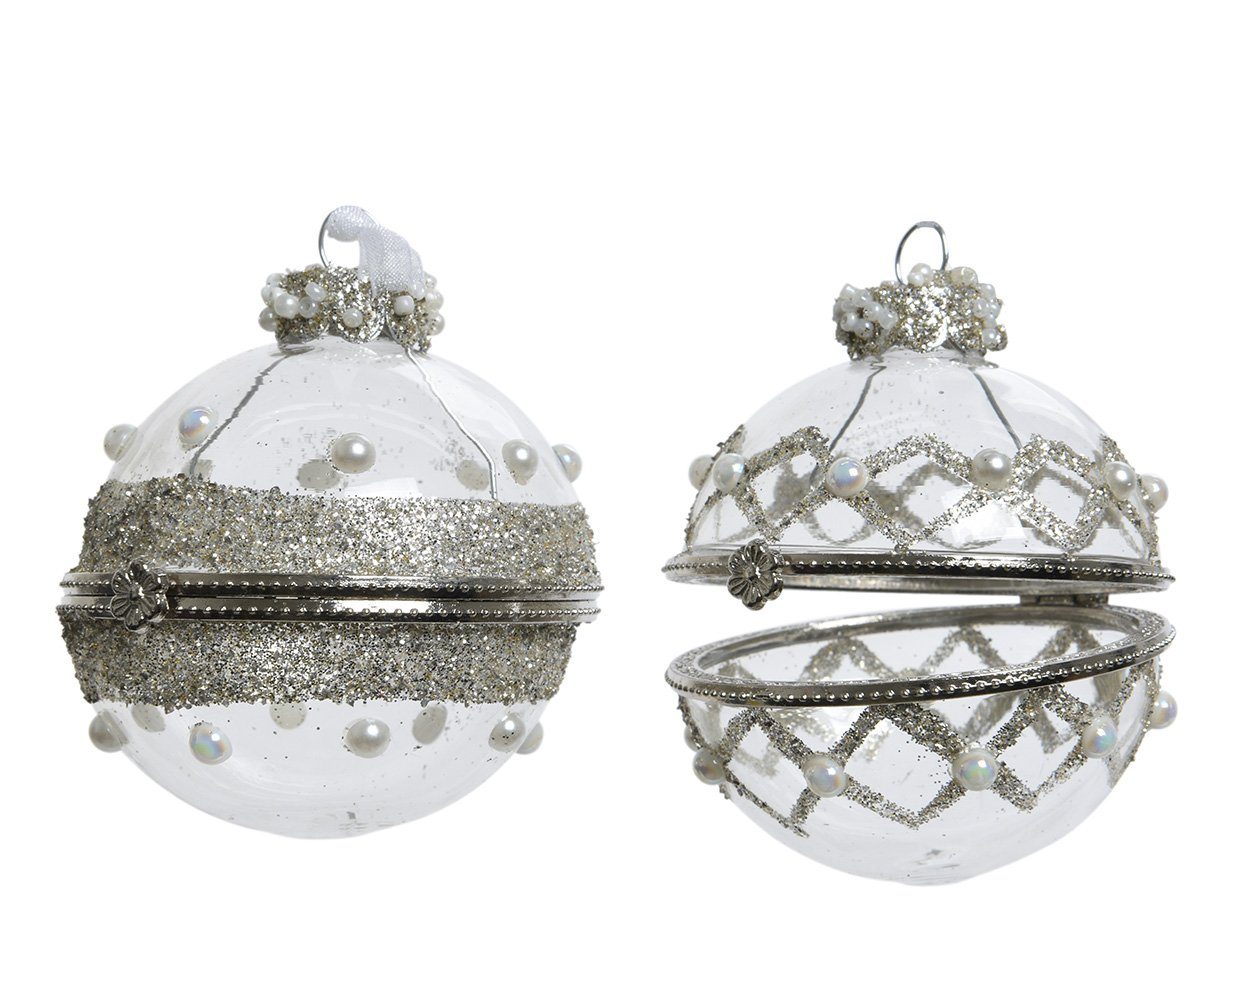 Decoris season decorations Christbaumschmuck, Weihnachtskugeln Glas aufklappbar mit Perlen 6cm klar, 1 Stück sort.